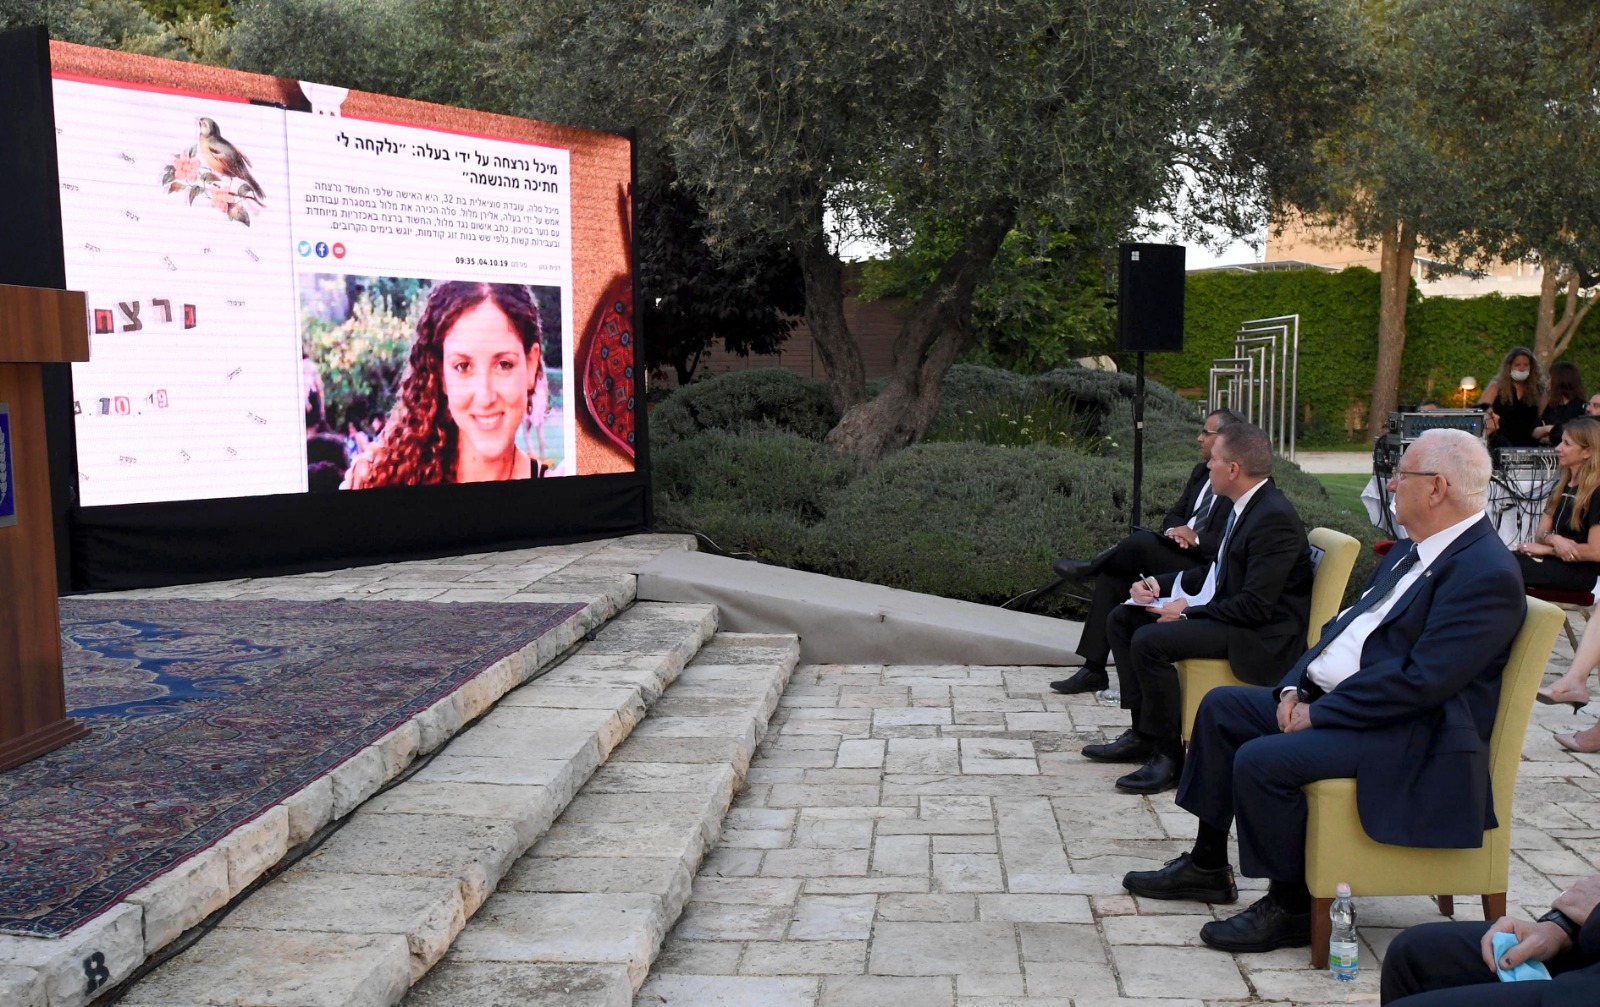 חיילות בנות גבעתיים זכו במקום הראשון בגמר האקתון לזכרה של מיכל סלה ז"ל שנערך בבית הנשיא בירושלים